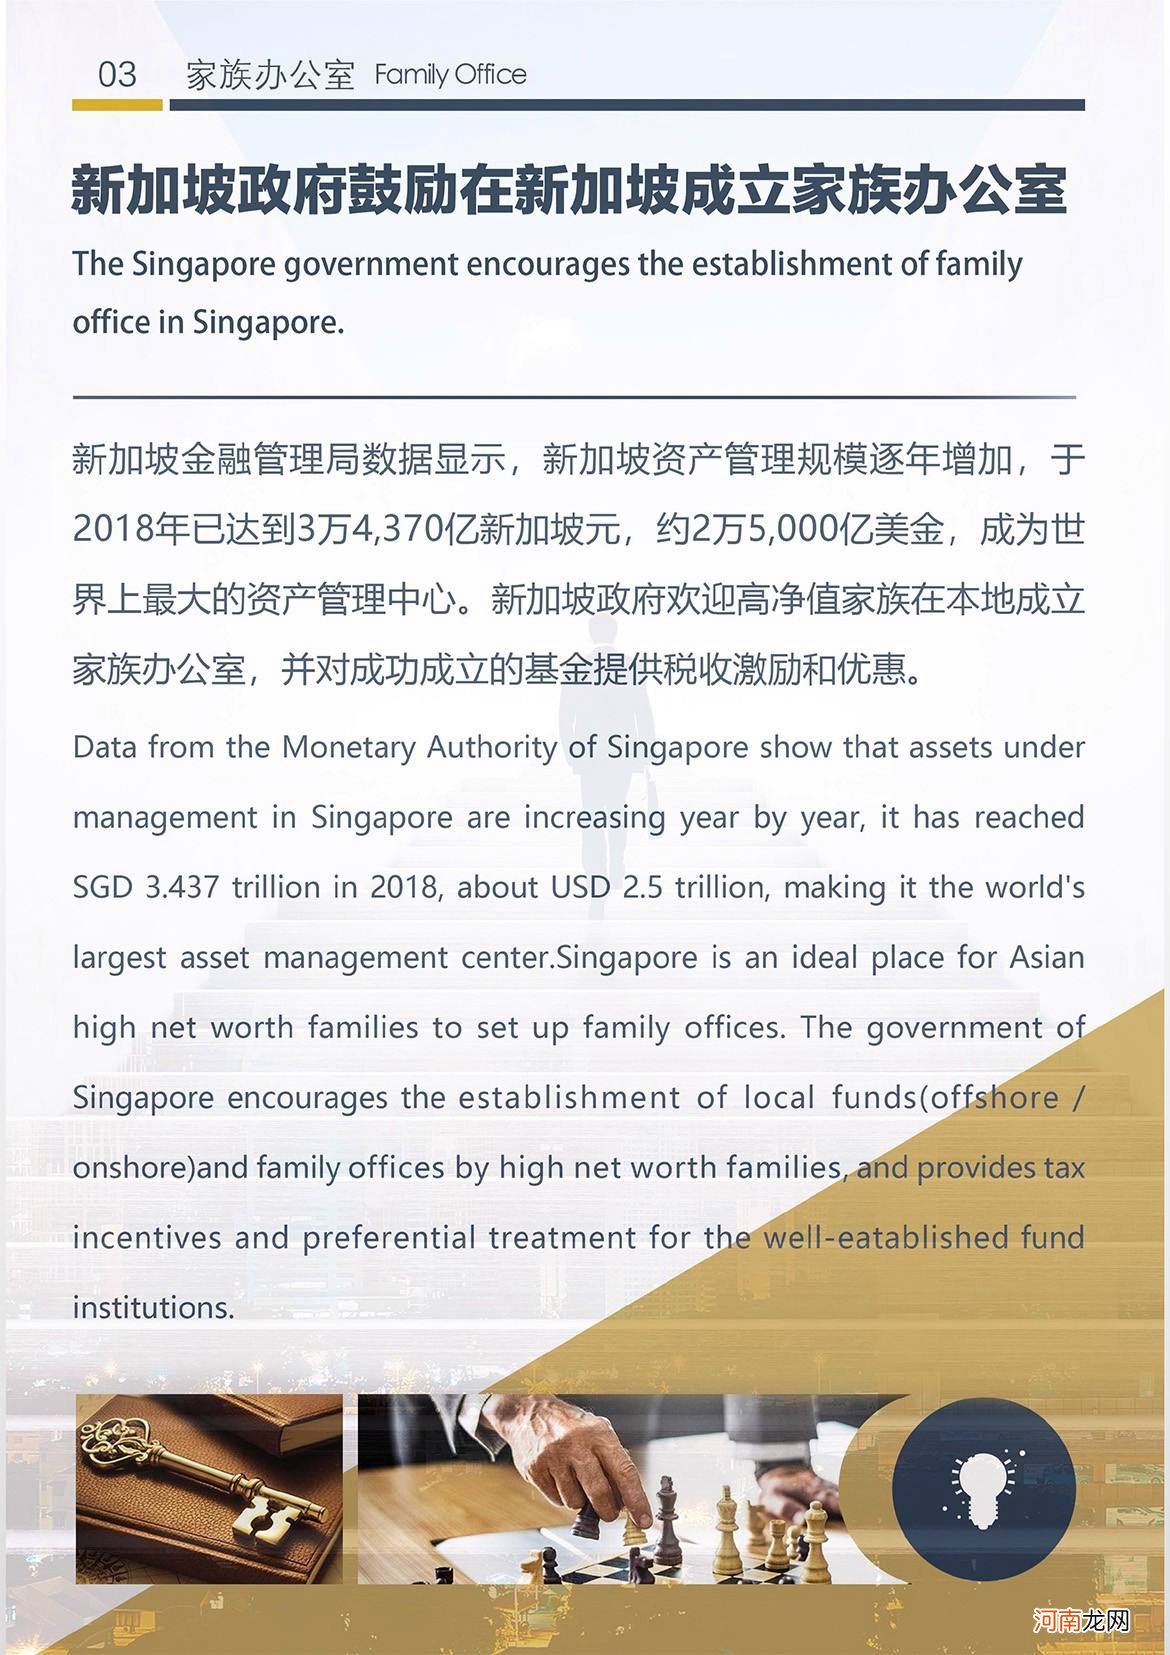 新加坡创业移民 新加坡创业移民180万